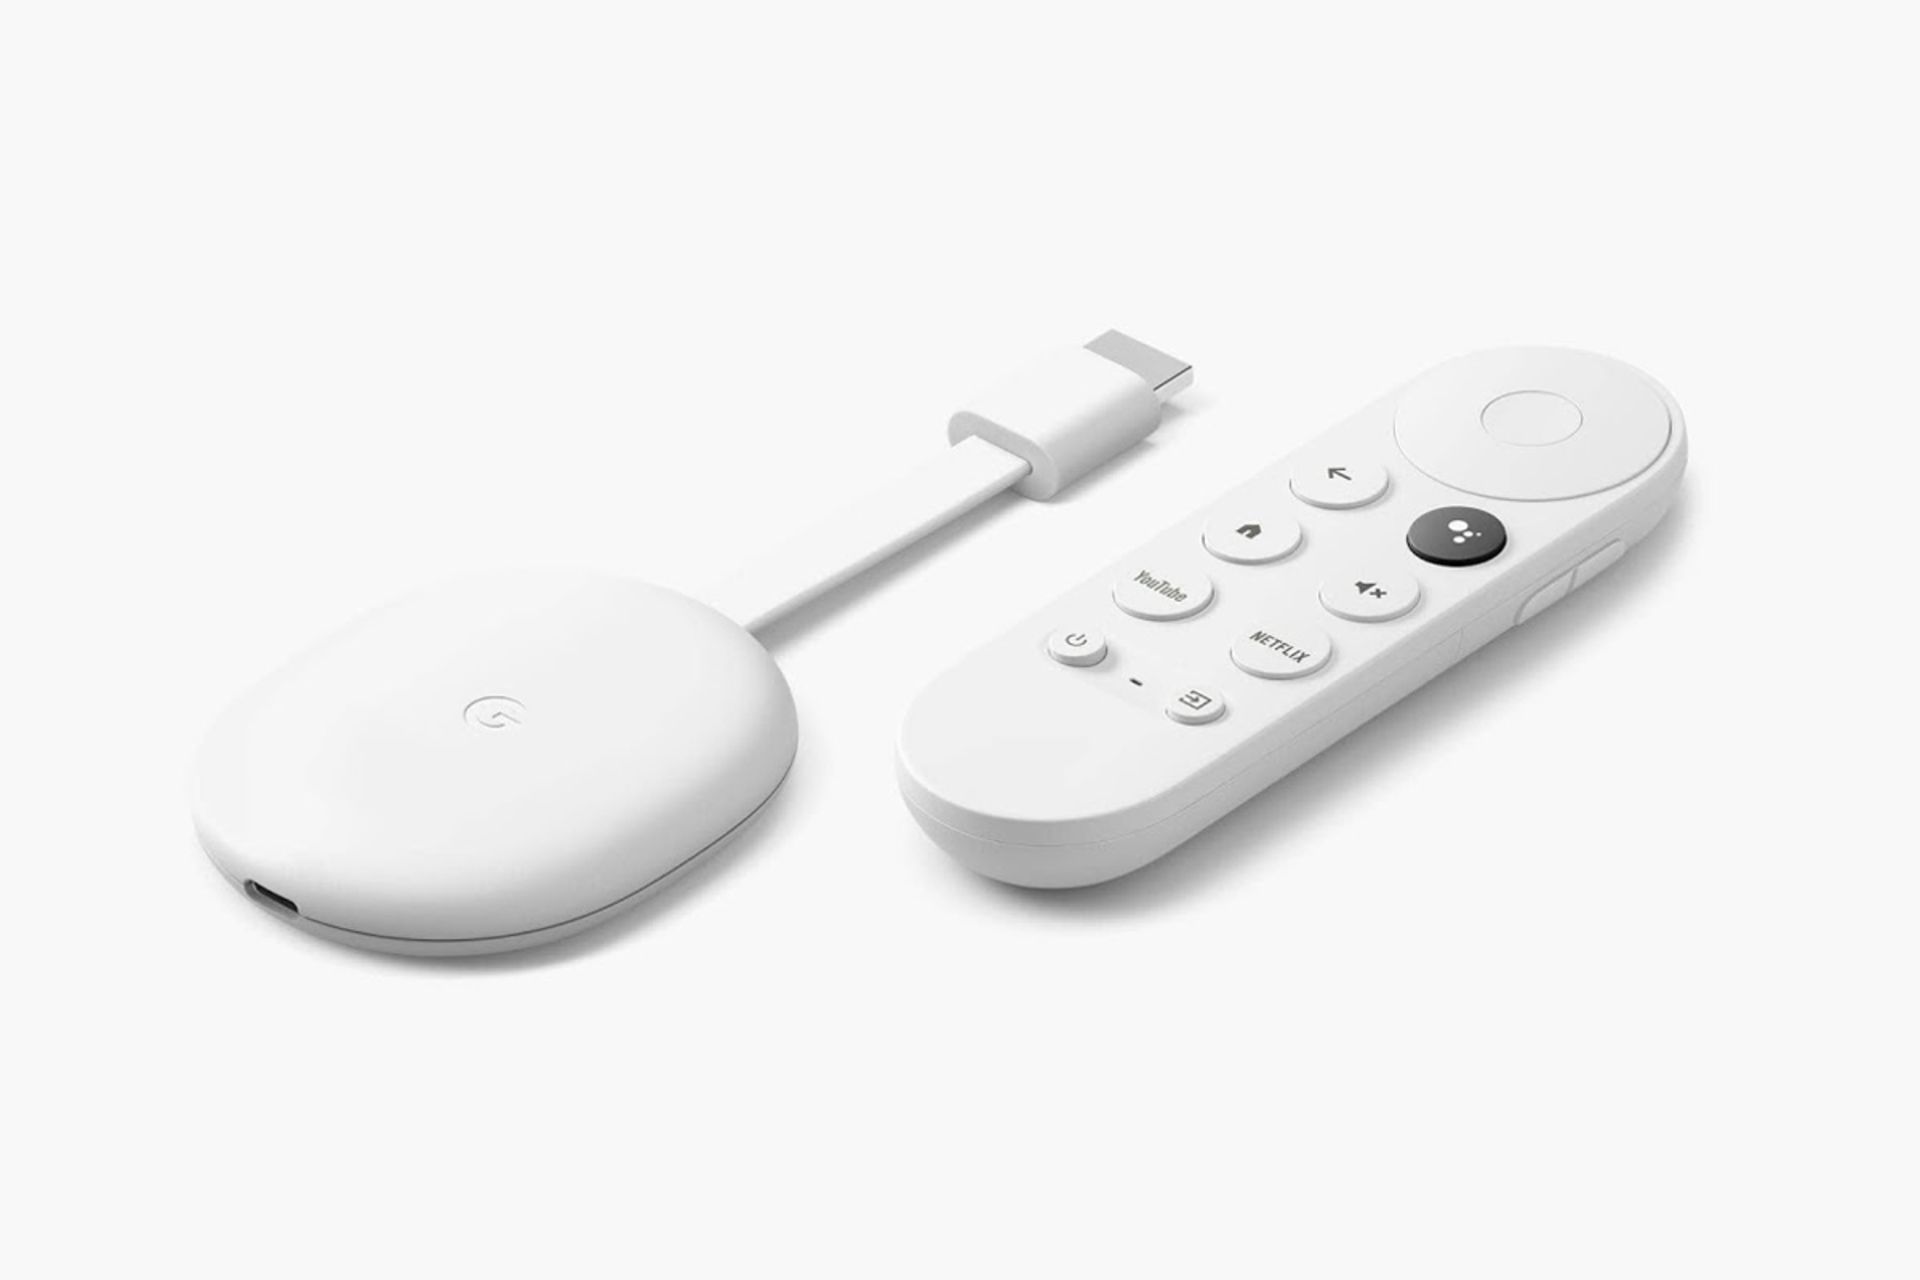 مدل 2020 کروم کست گوگل / Google Chromecast با ریموت کنترل سفید